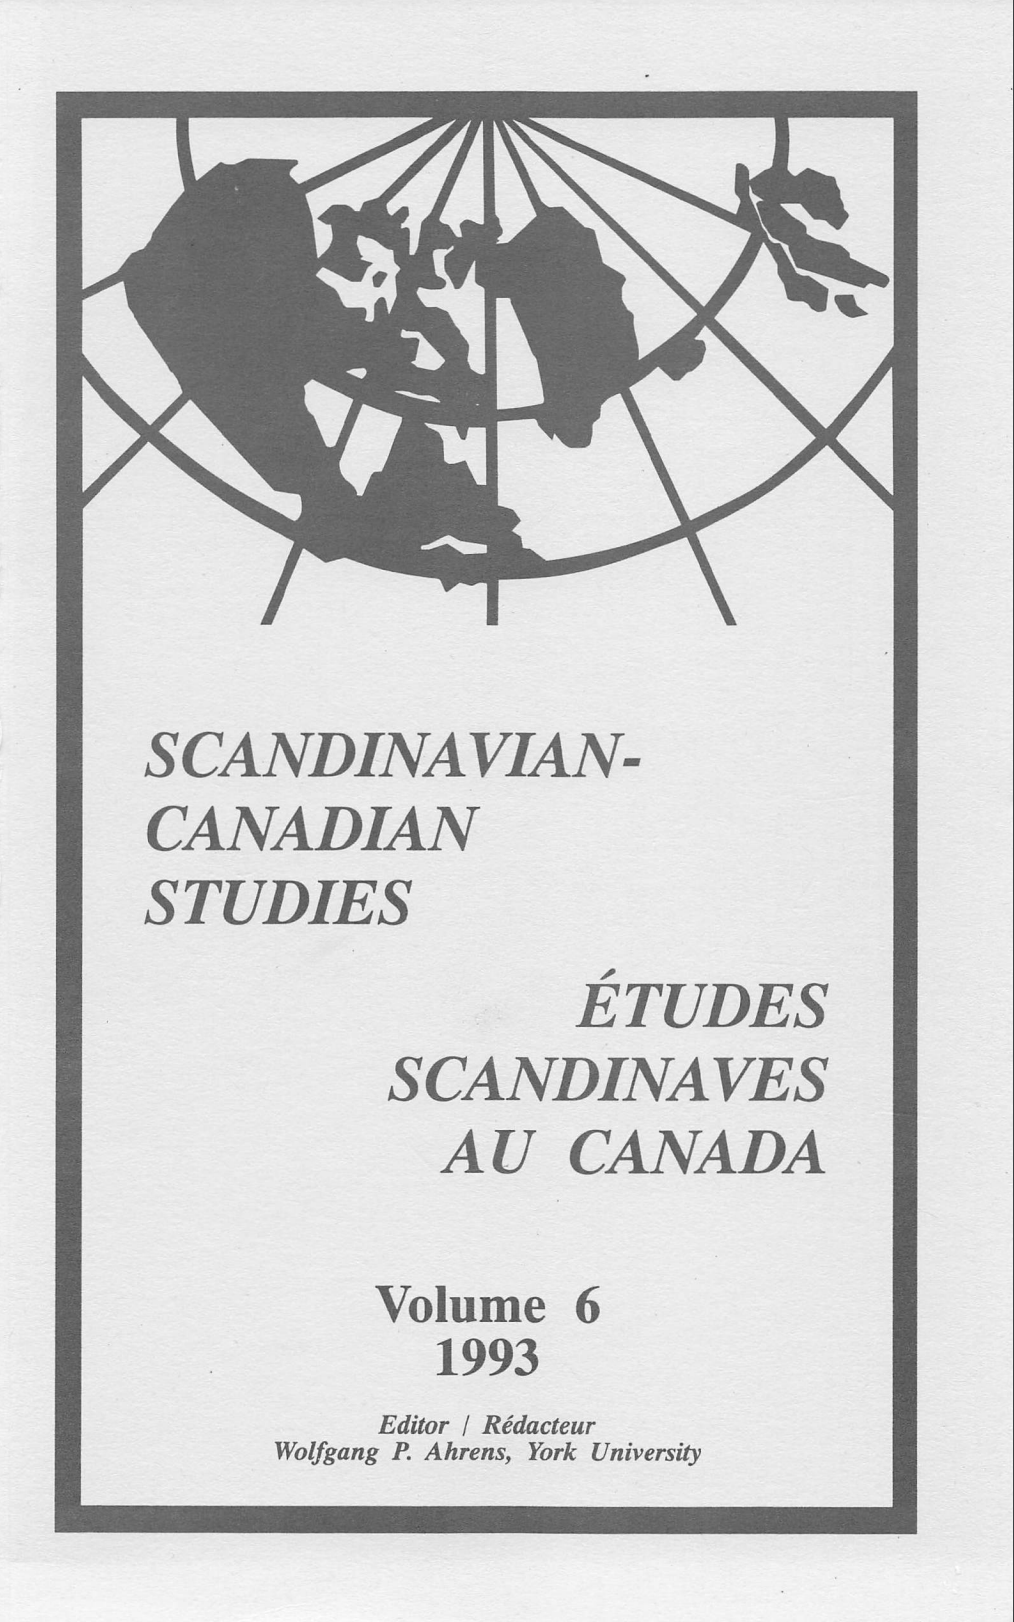 					View Vol. 6 (1993): SCANDINAVIAN-CANADIAN STUDIES/ÉTUDES SCANDINAVES AU CANADA Vol. 6 (1993)
				